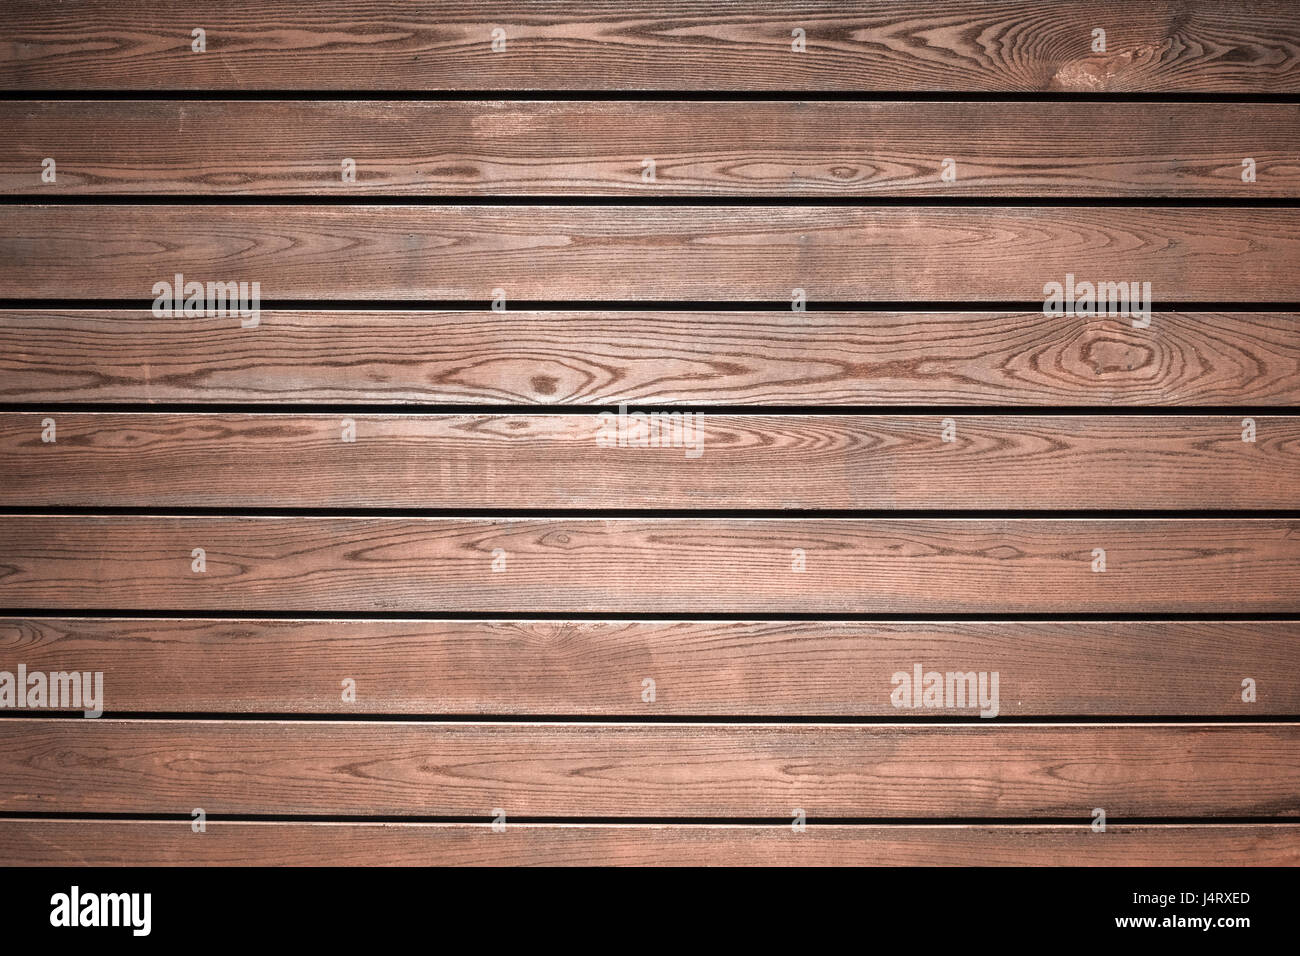 La texture de la planche en bois close up Banque D'Images